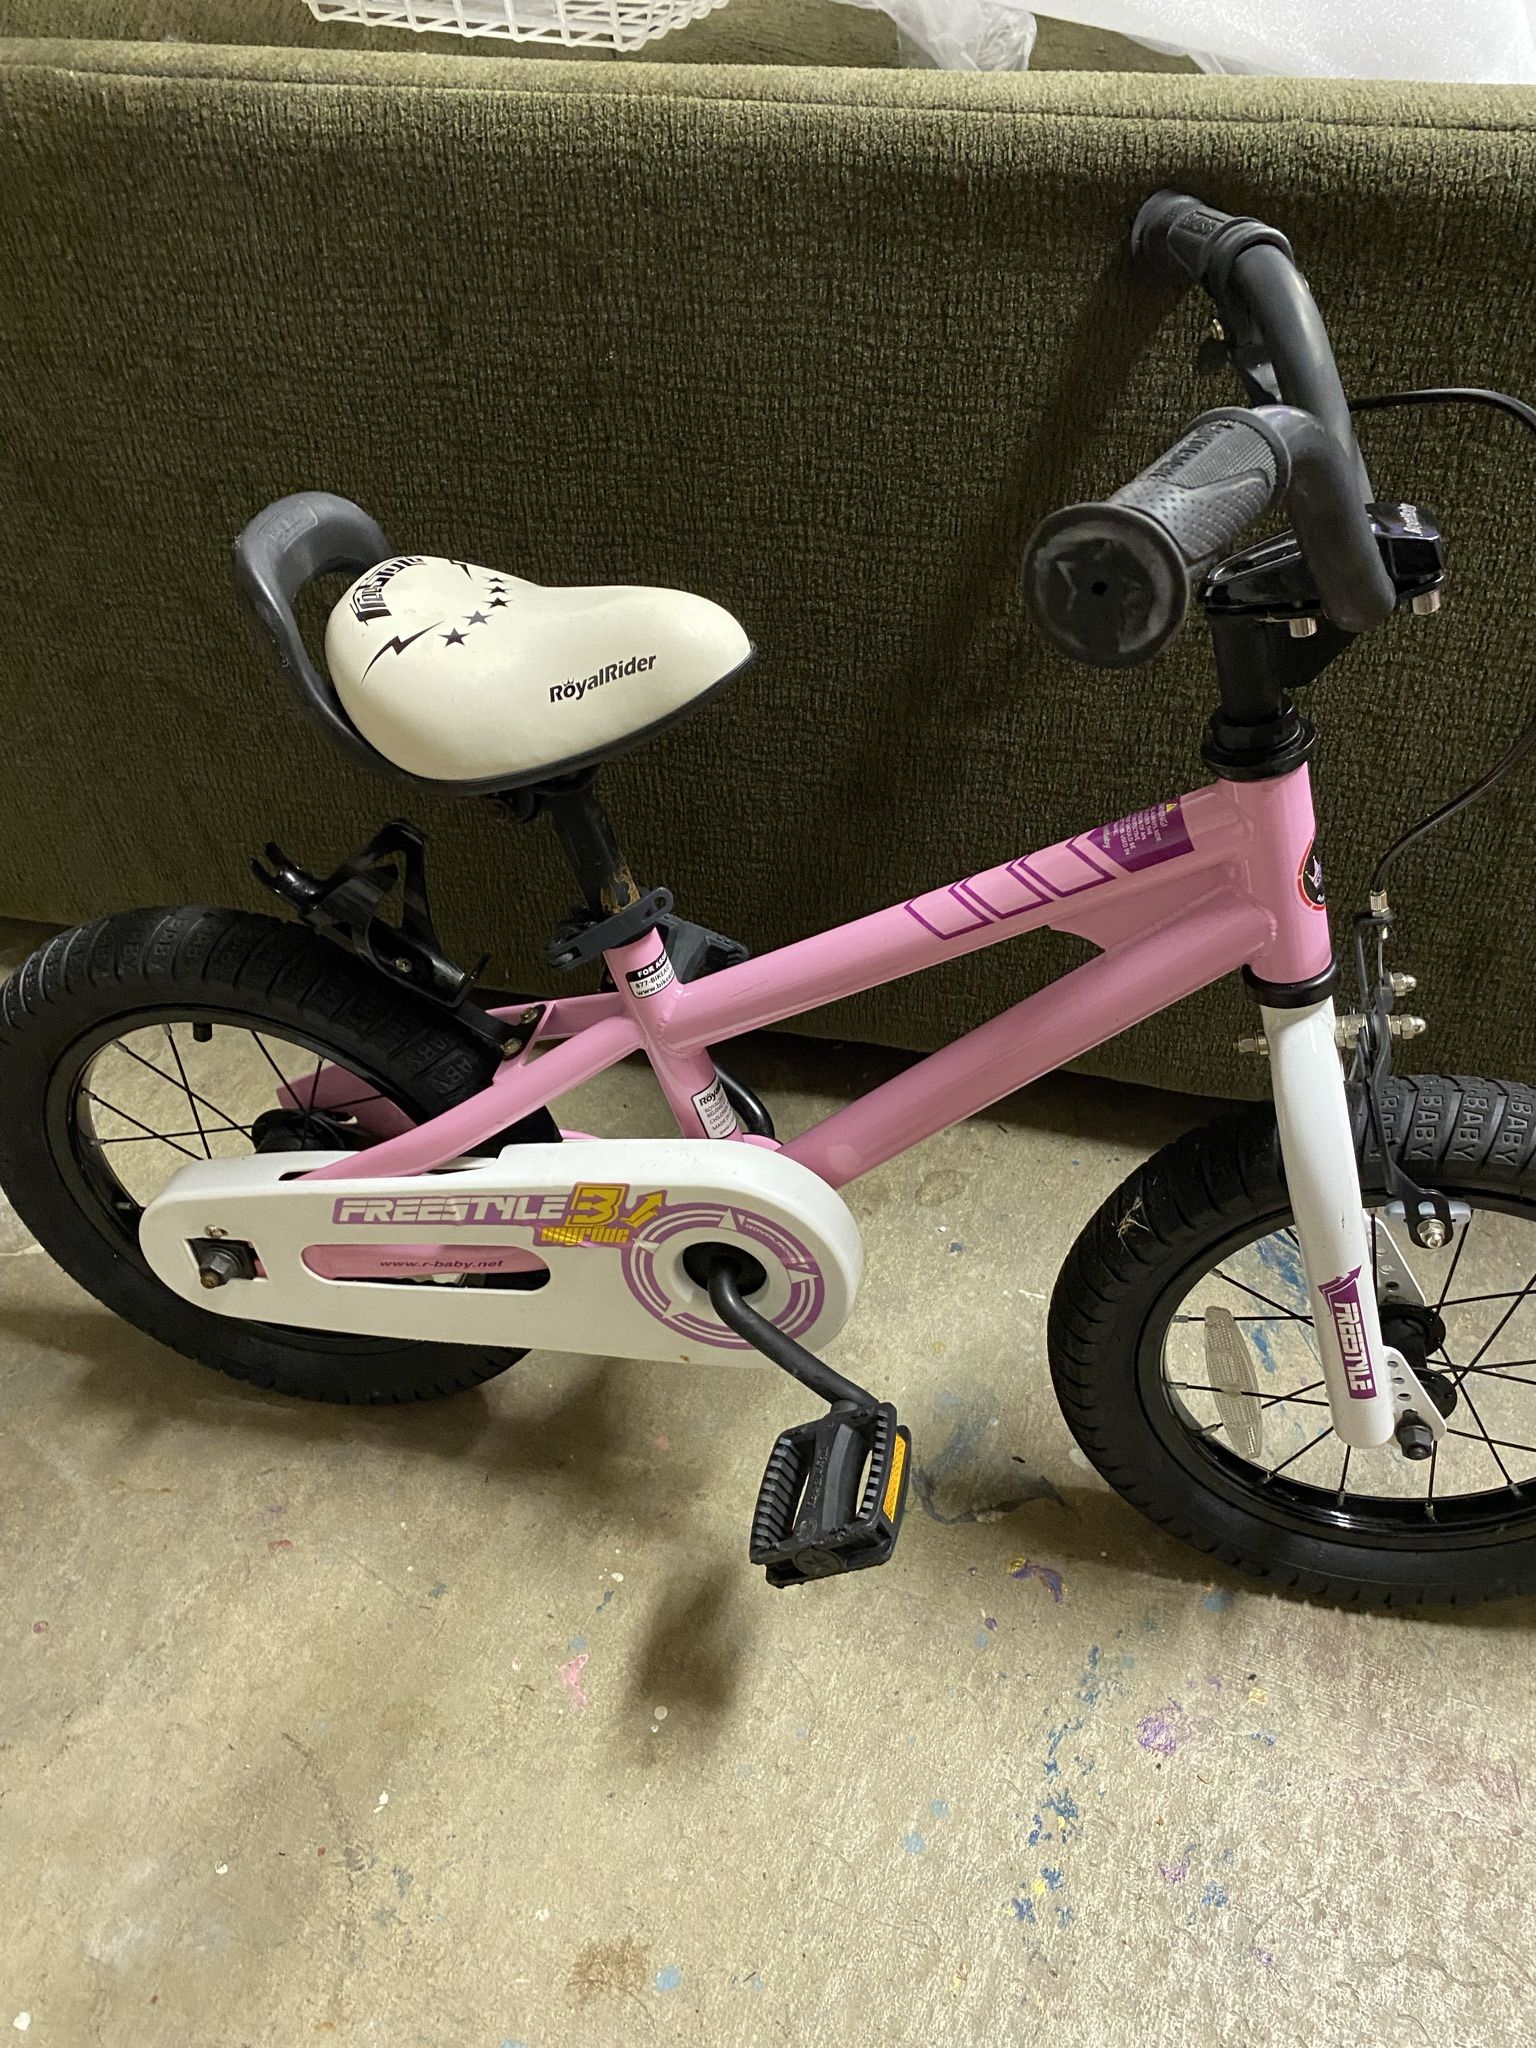 Kid’s FREESTYLE 14” Royal Rider Bike (Pink)